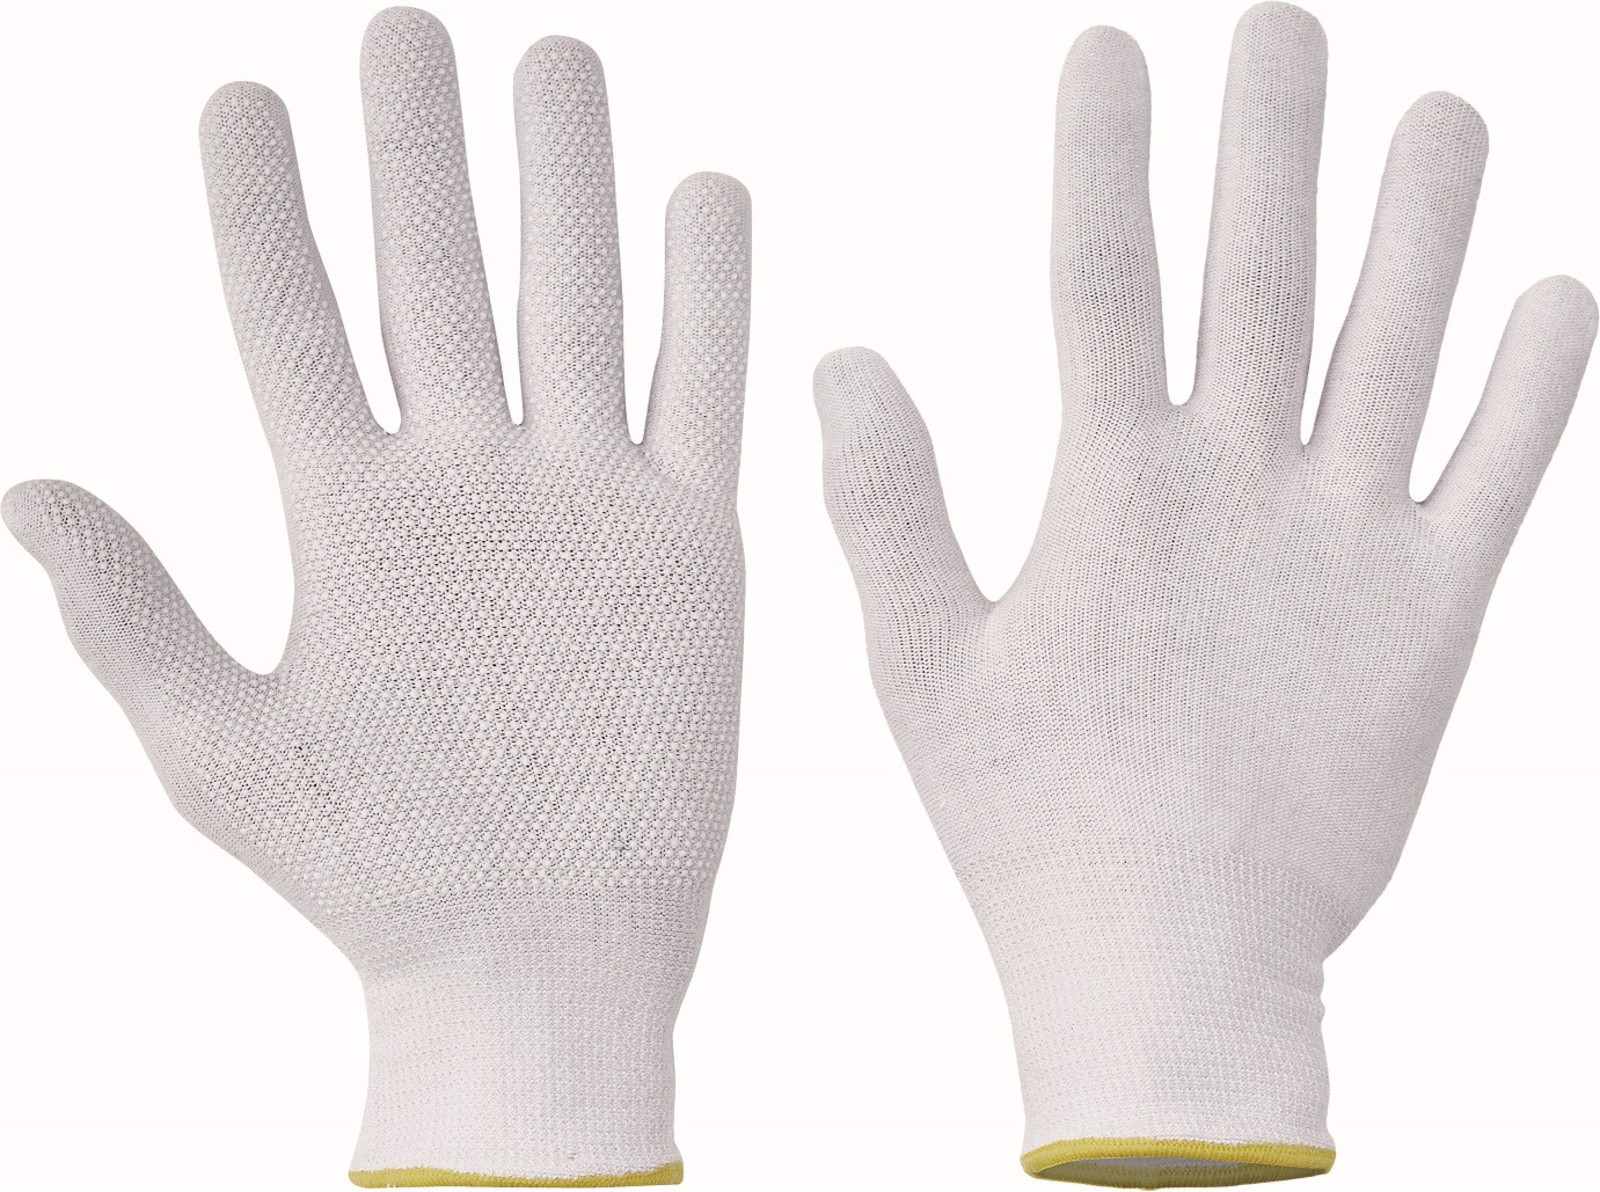 Pracovné rukavice Bustard Evo s terčíkmi - veľkosť: 10/XL